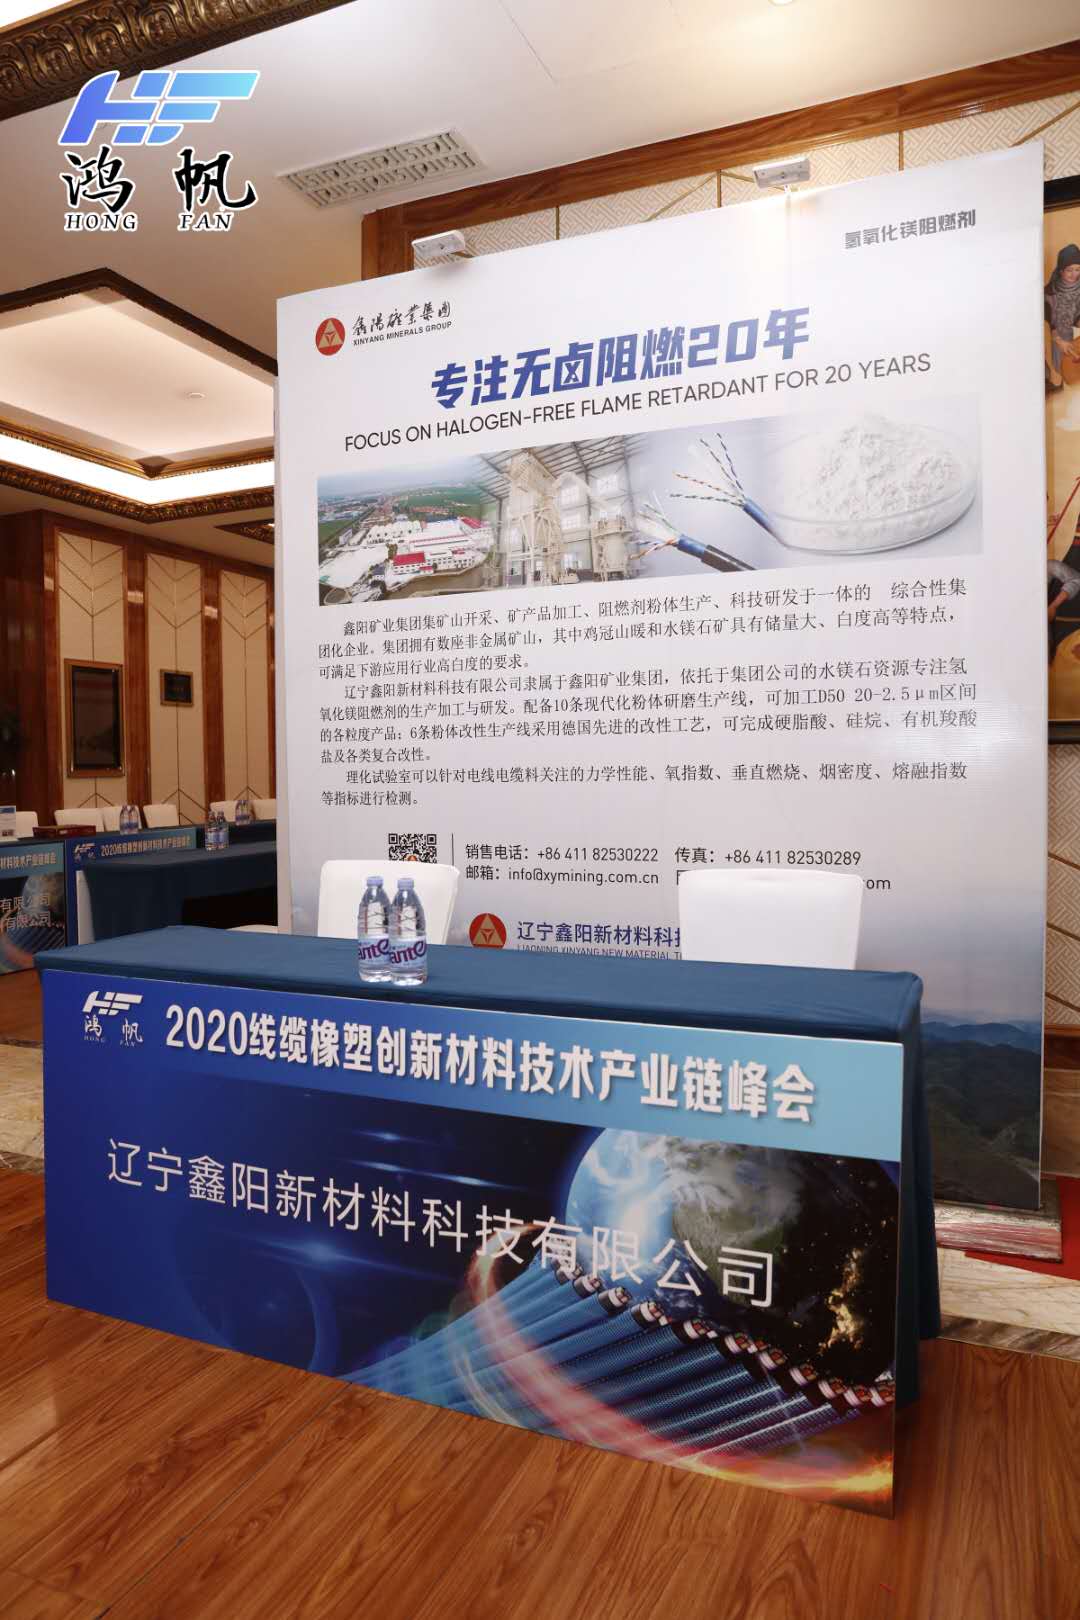 辽宁鑫阳新材料科技有限公司受邀参加“2020 线缆橡塑创新材料技术产业链峰会”